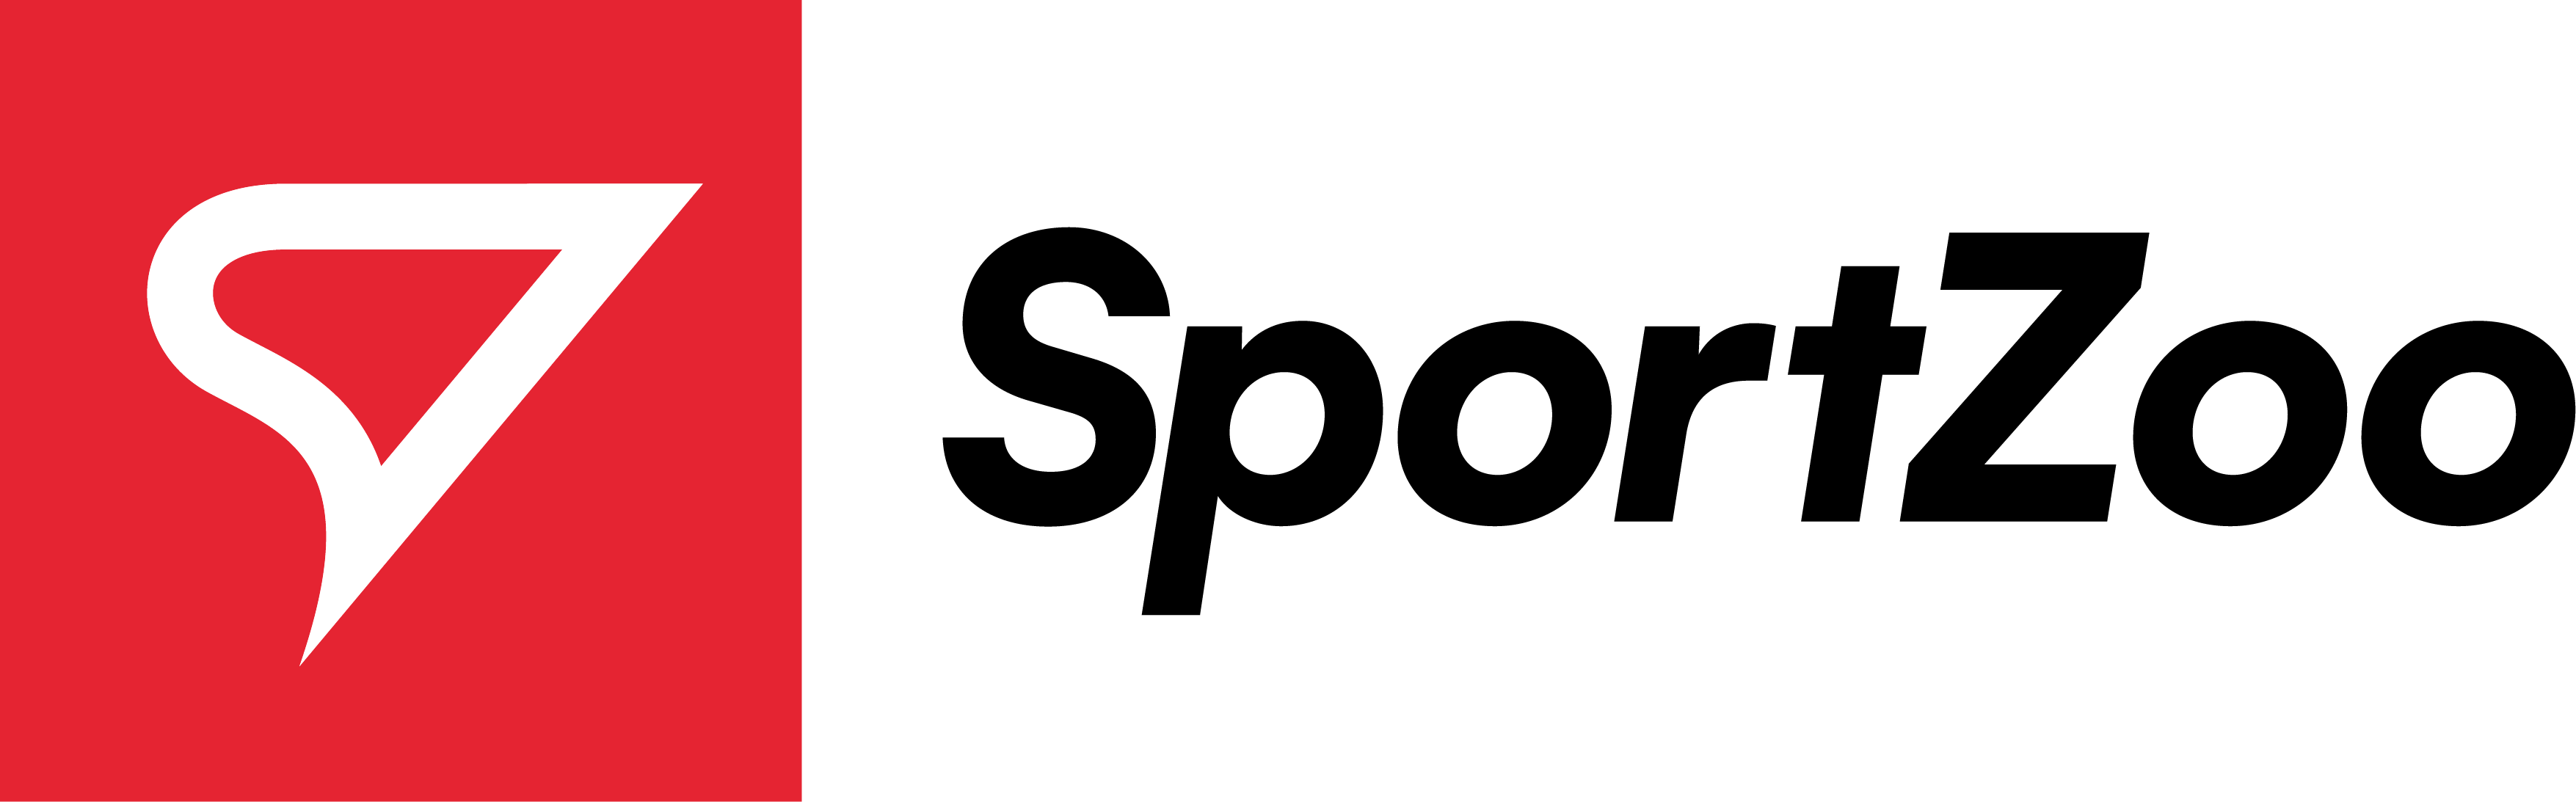 SportZoo logo text